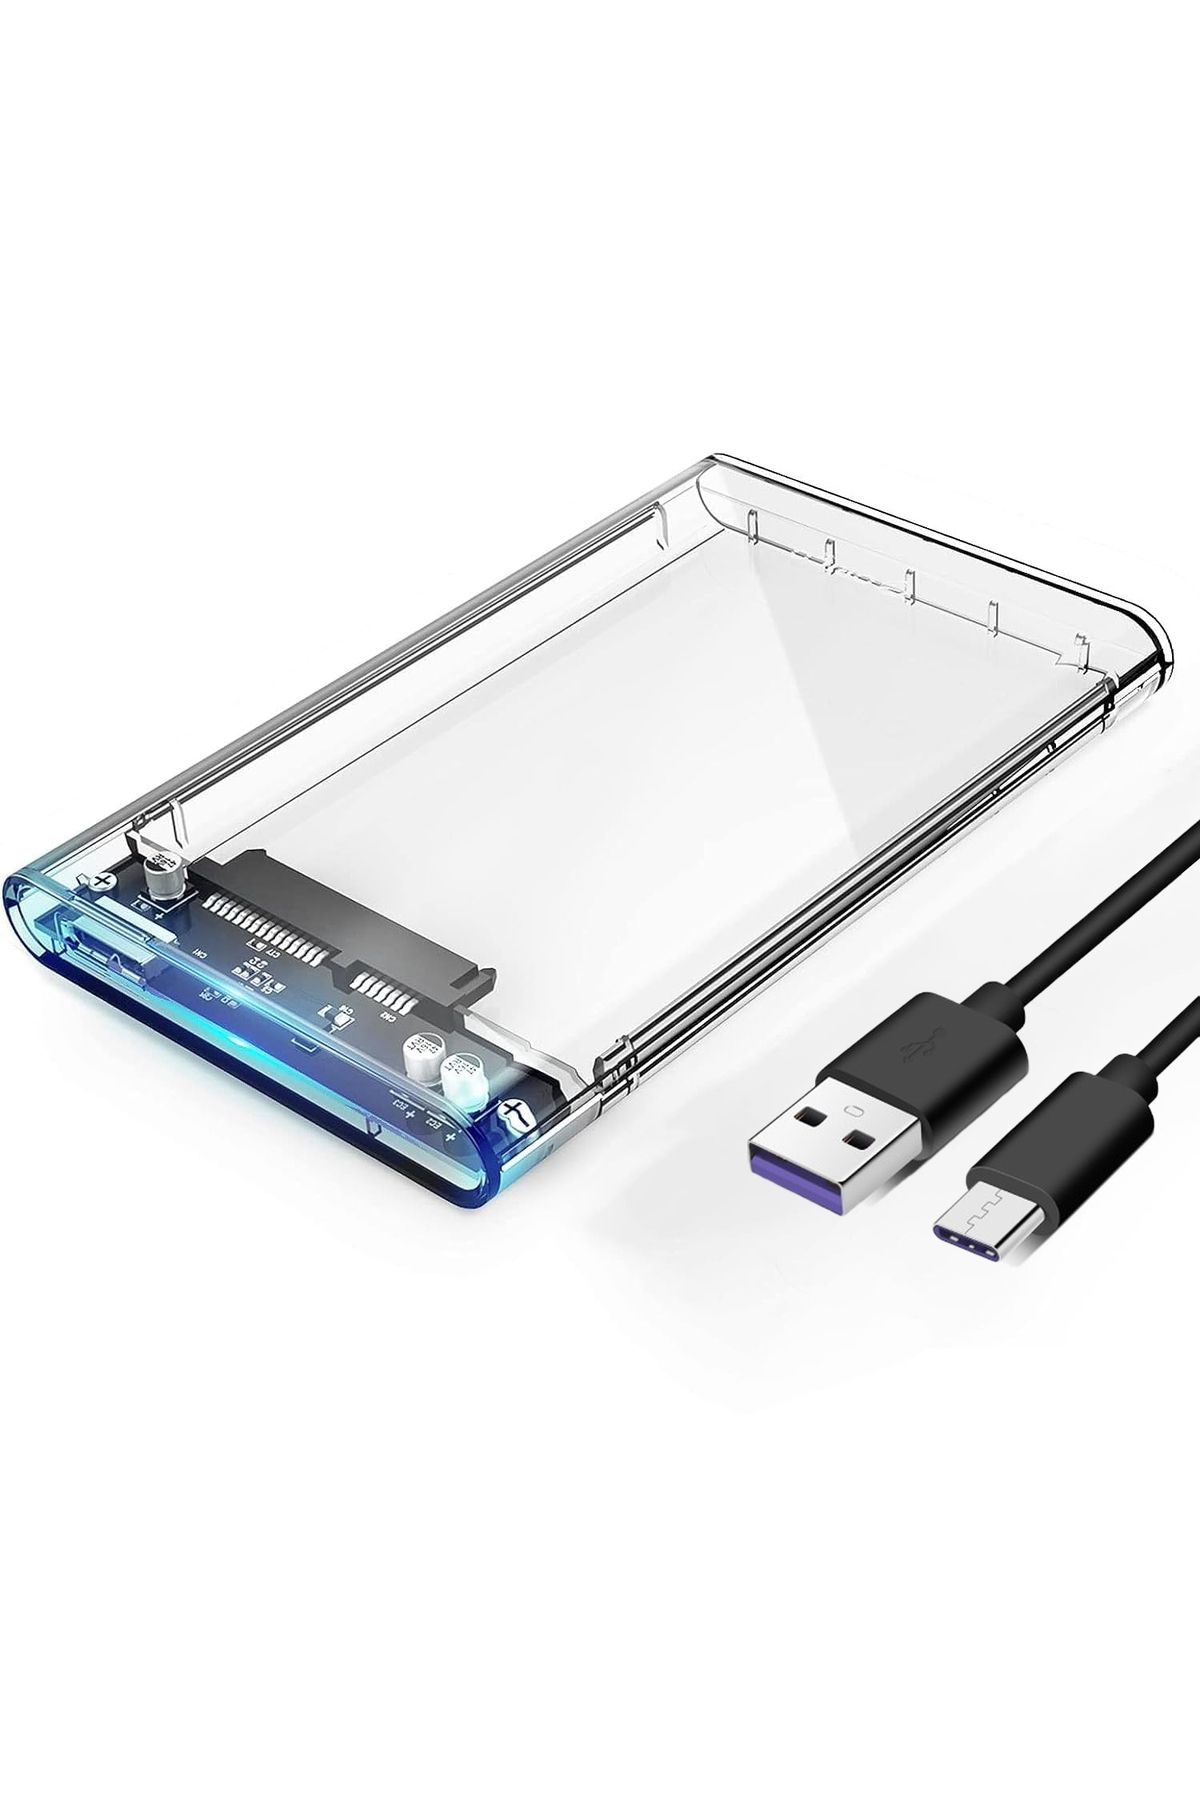 Forzacase Taşınabilir Yüksek Hızlı 5Gbps USB 3.1 SATA 2.5 inch Harici Harddisk Kutusu - FC468